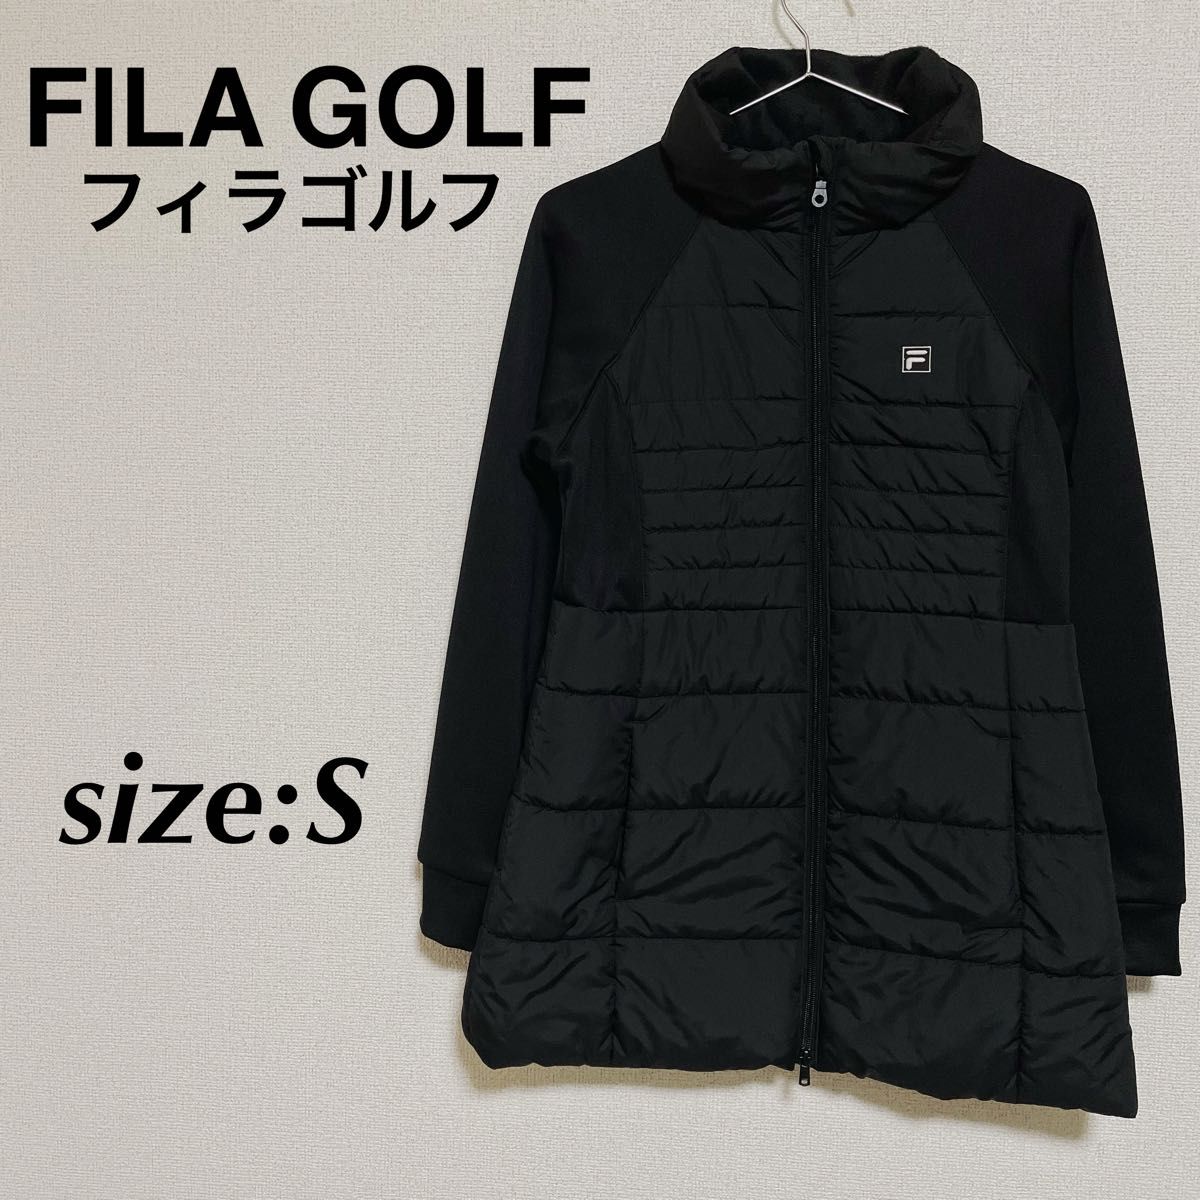 FILA GOLF フィラゴルフ ゴルフウェア ゴルフジャケット ジャンパー 黒 ダウンコート アウター